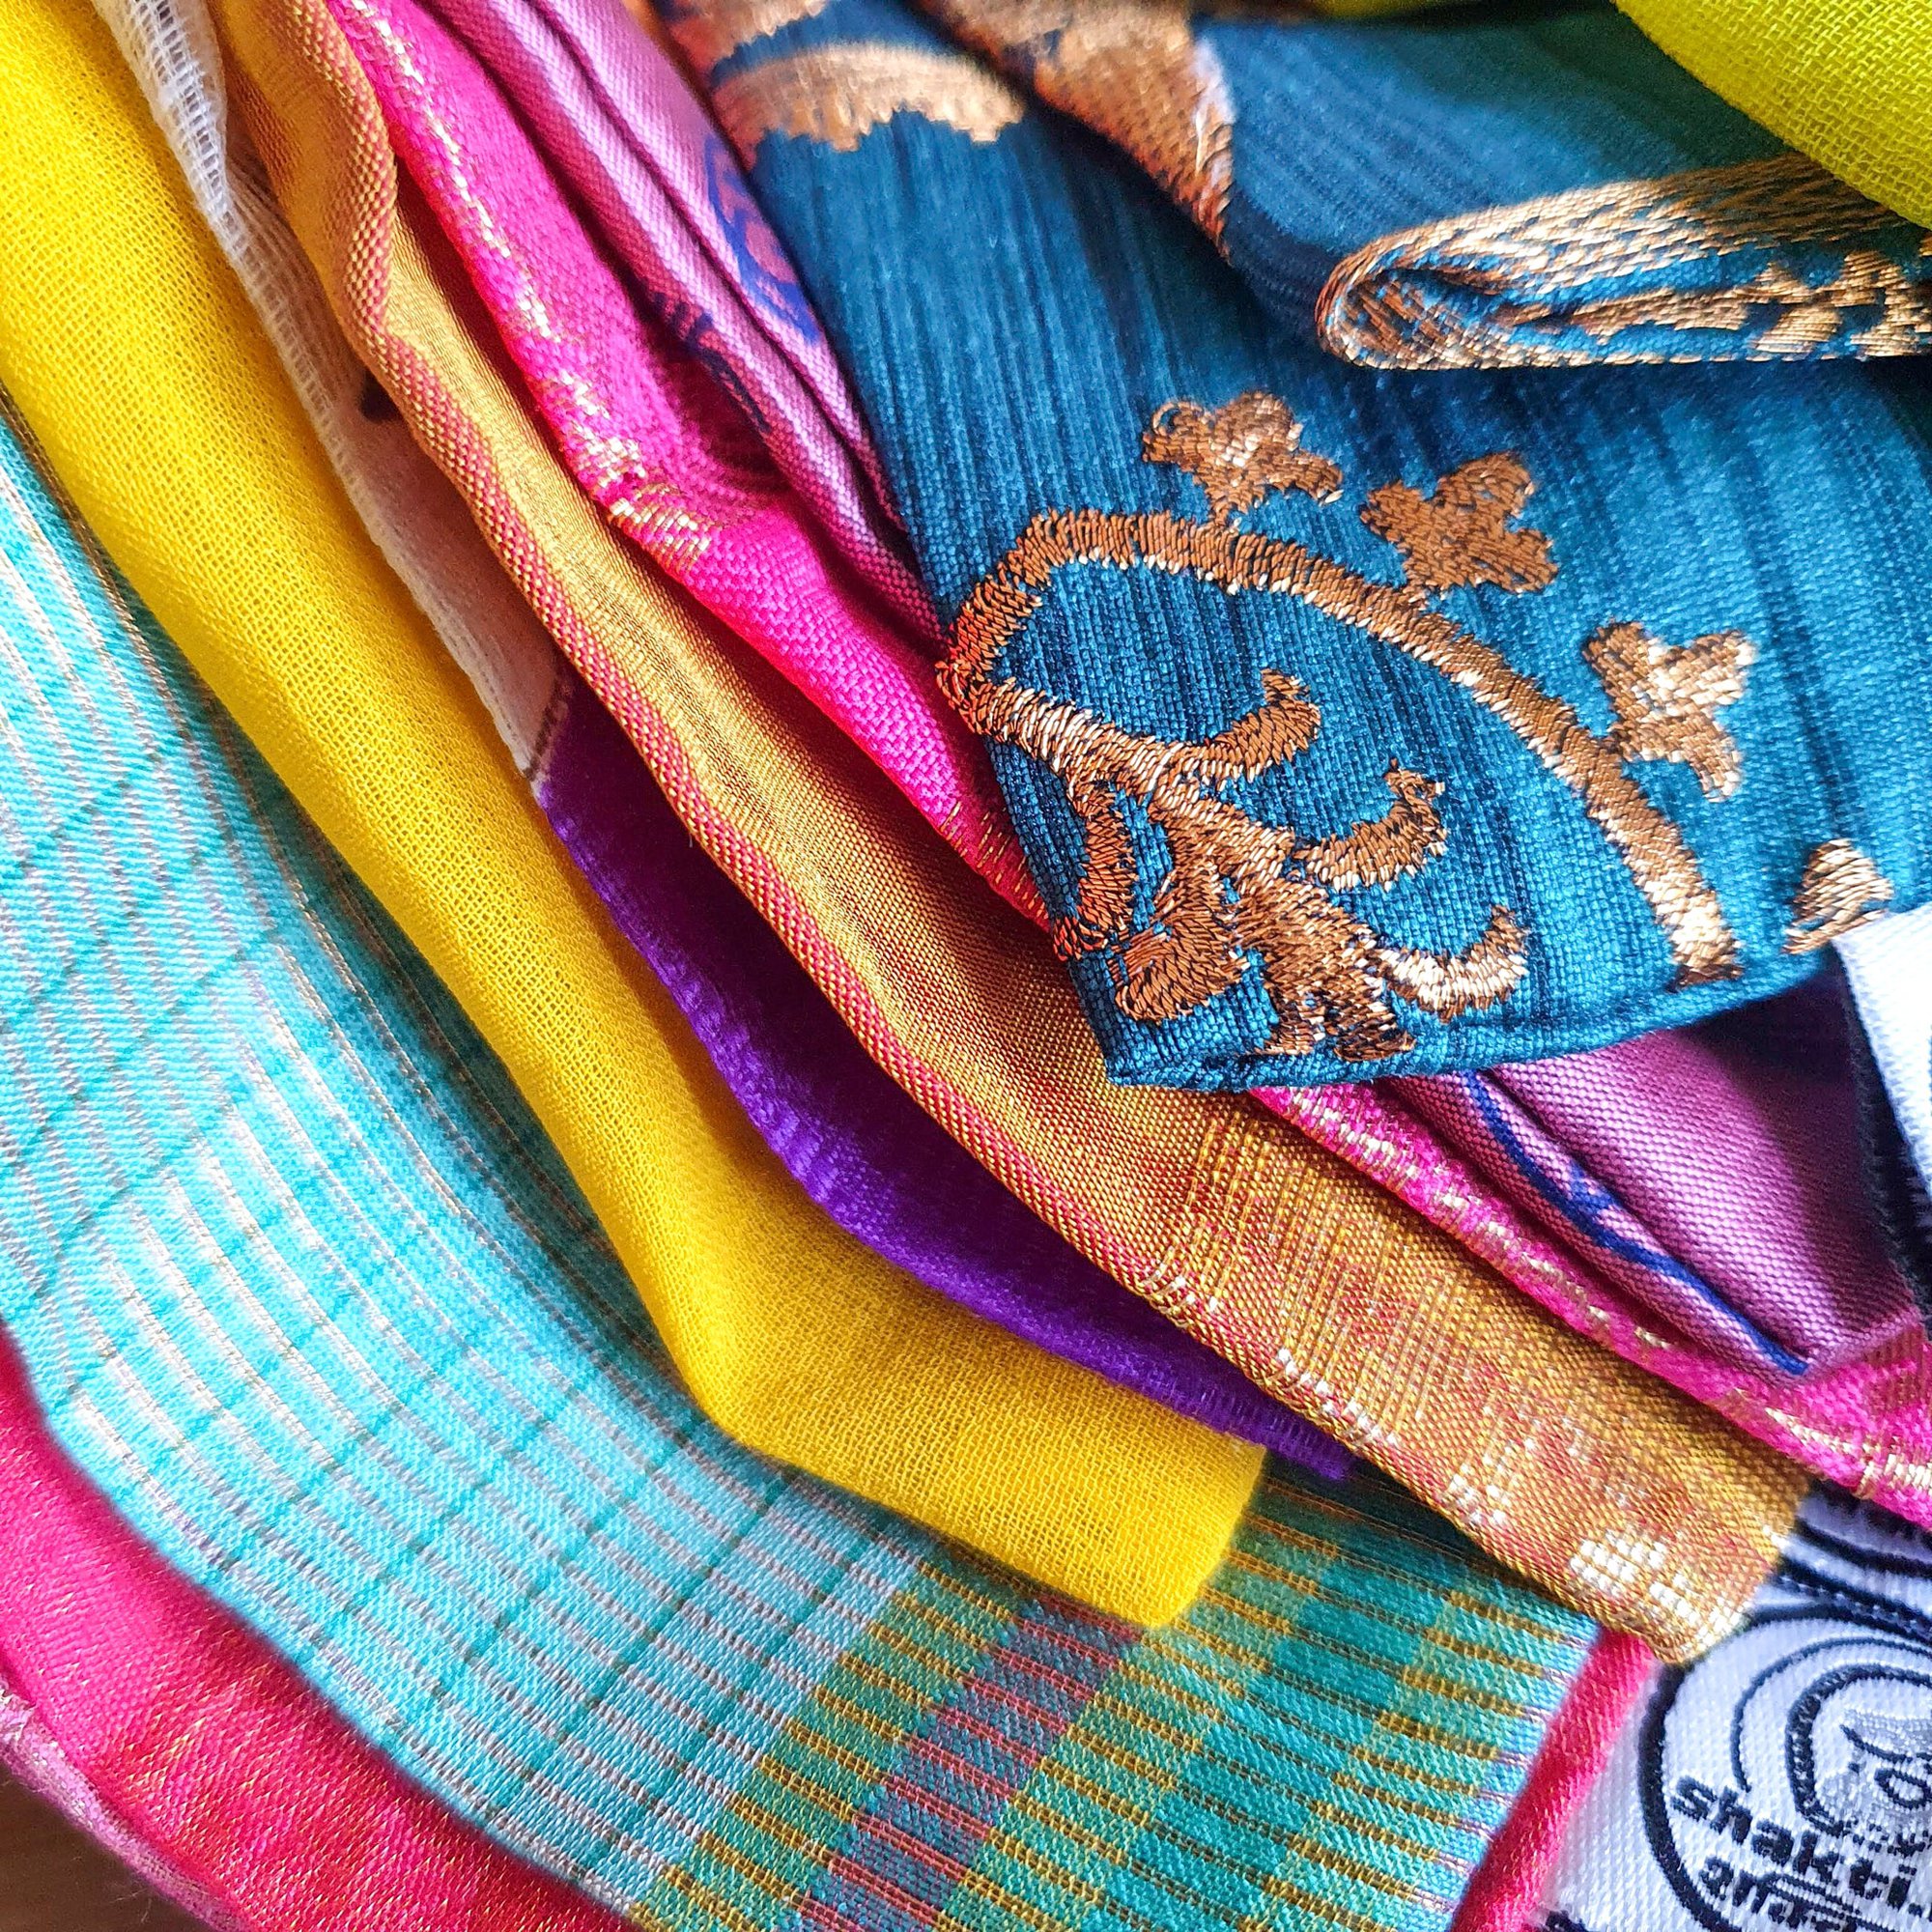 Large Sari Gift Bags With Drawstring